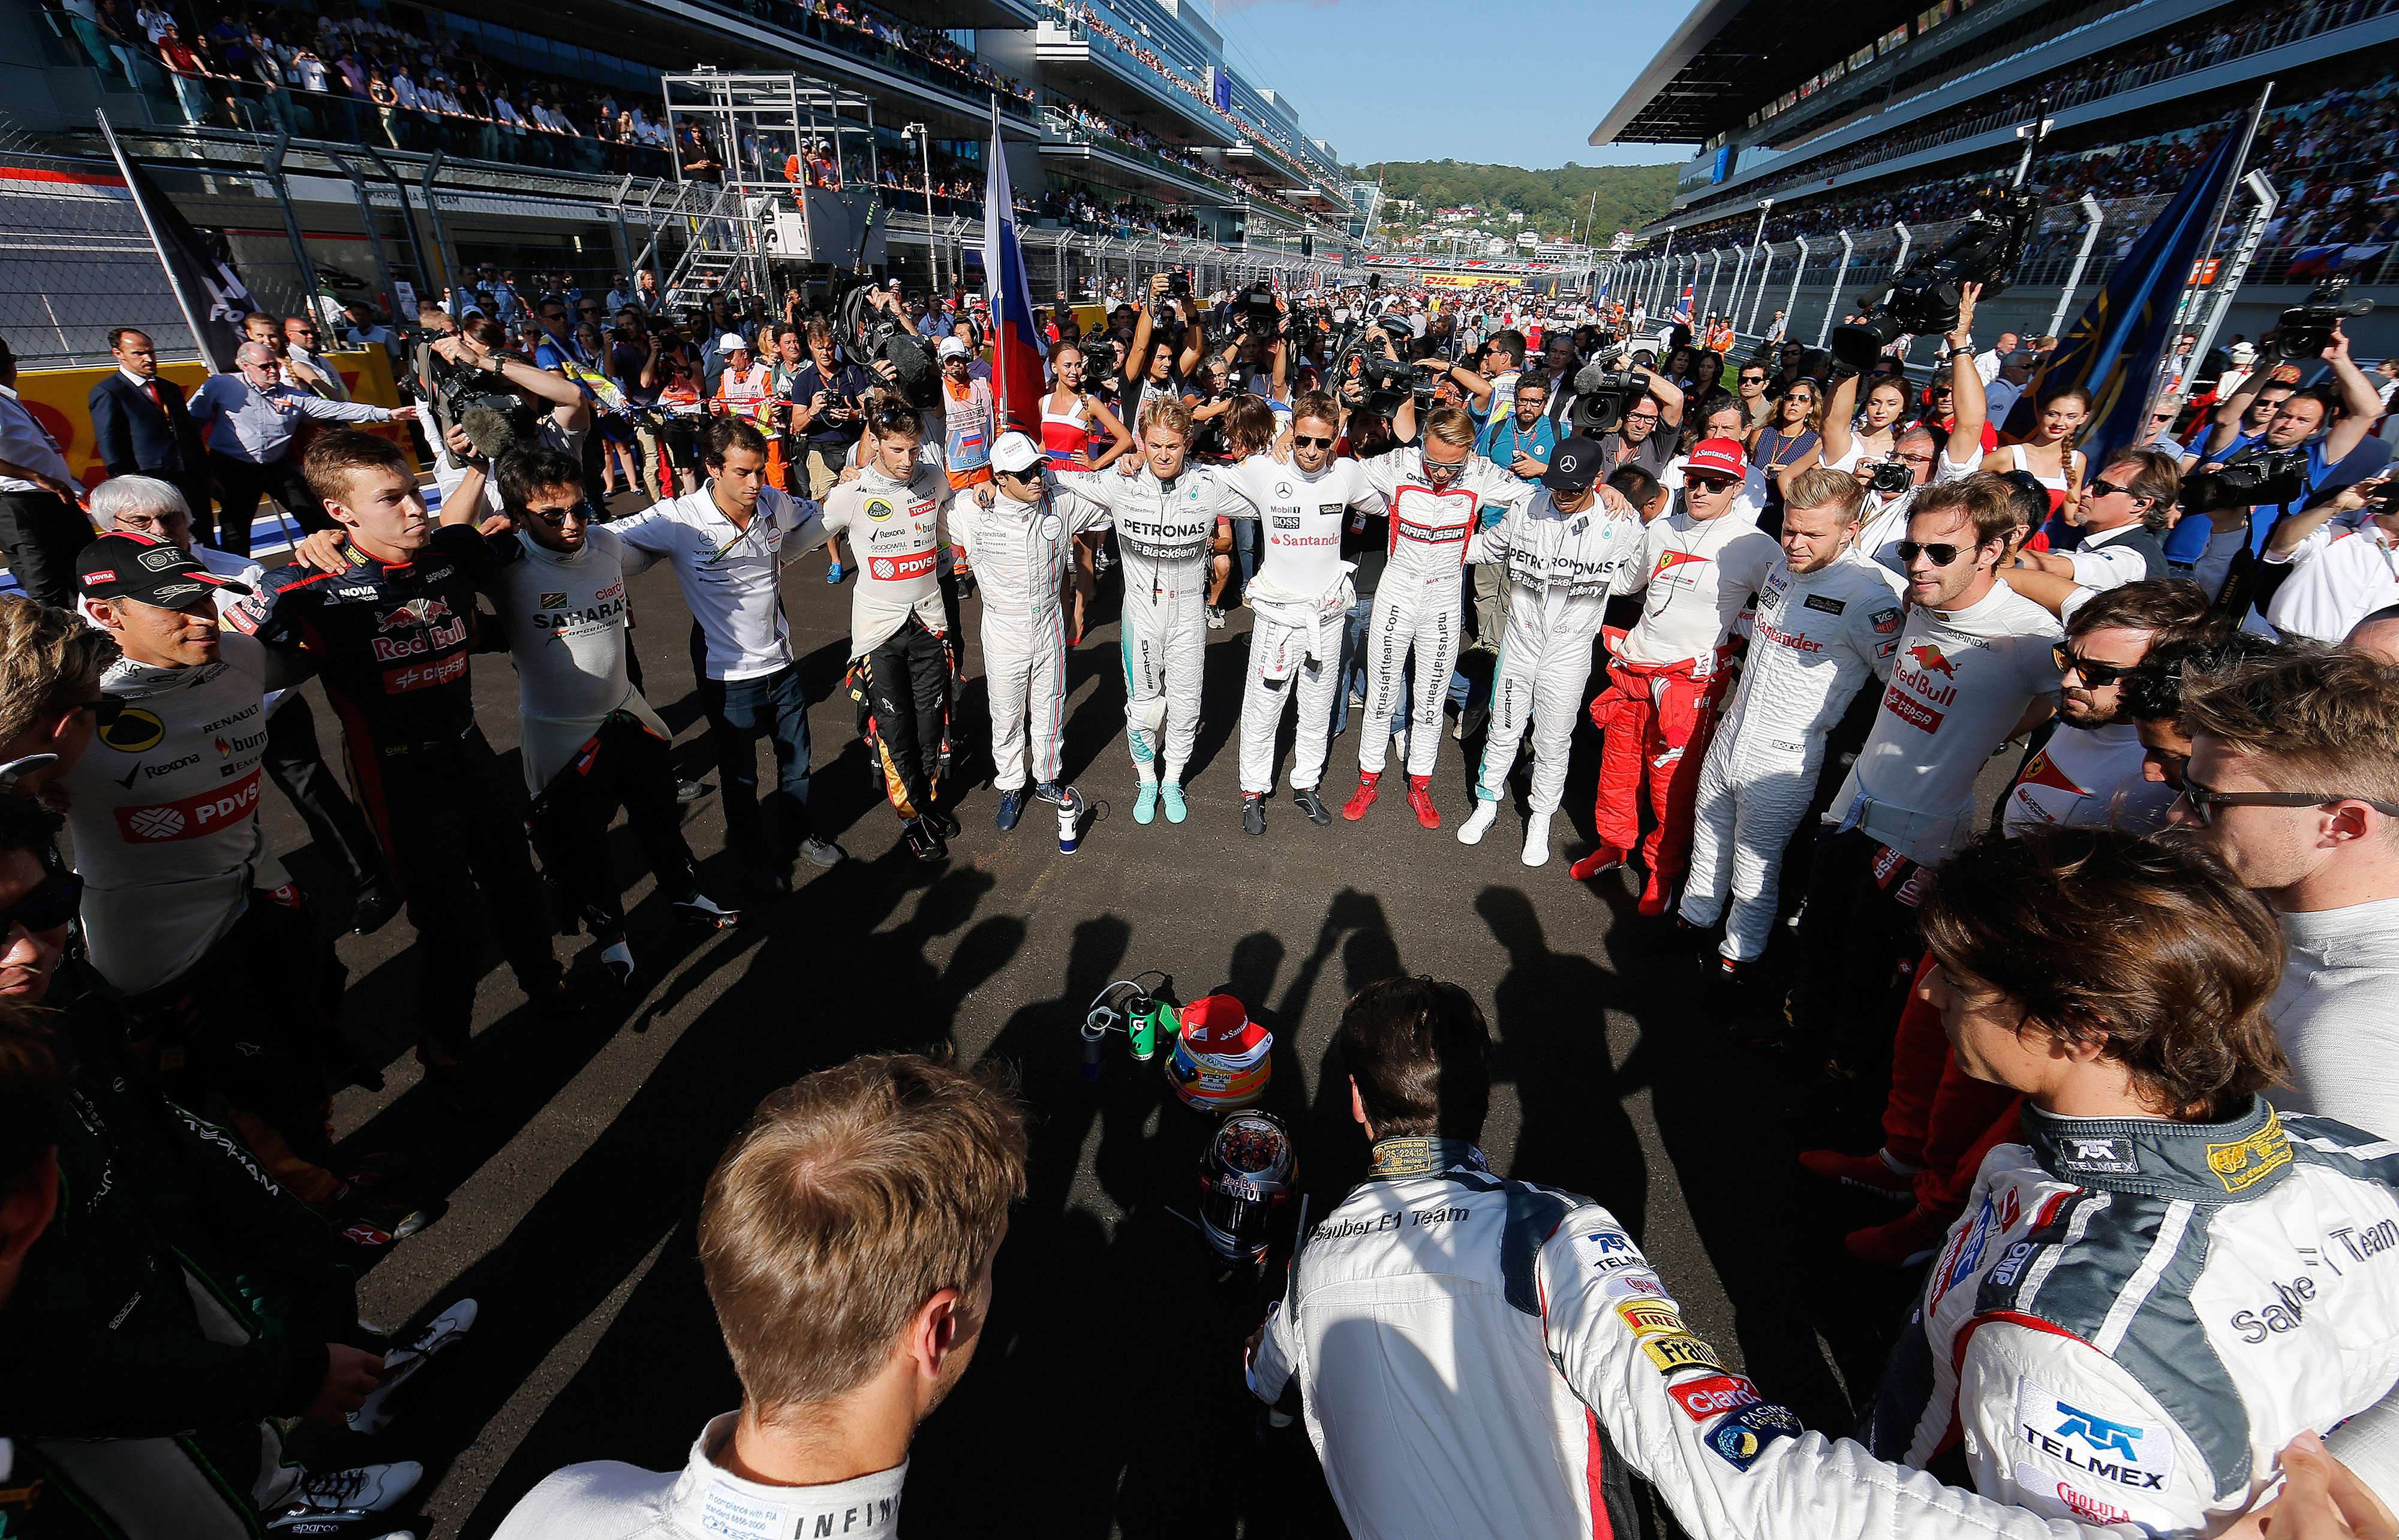 Angajaţii echipei Mercedes vor fi răsplătiţi cu cel puţin 10.000 de lire sterline pentru câştigarea titlului mondial la F1